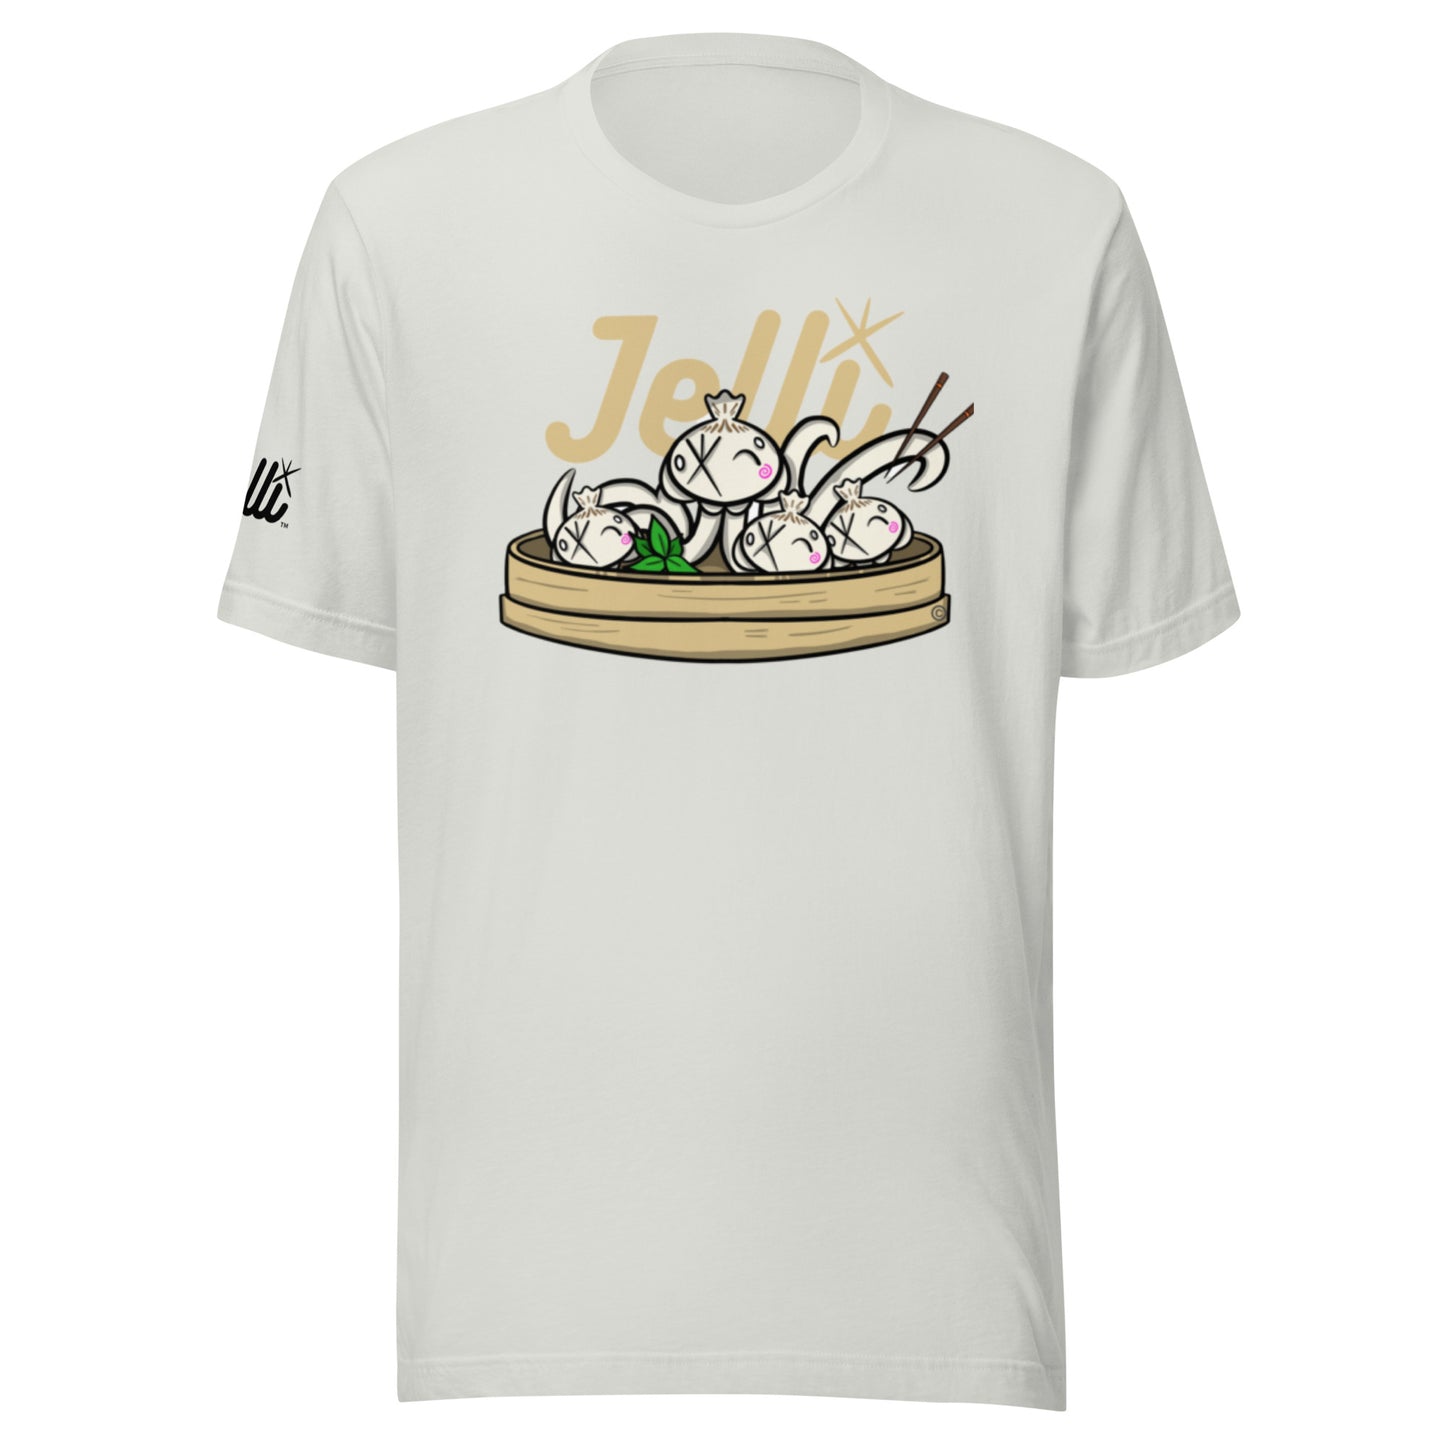 Jelli Dumplings shirt